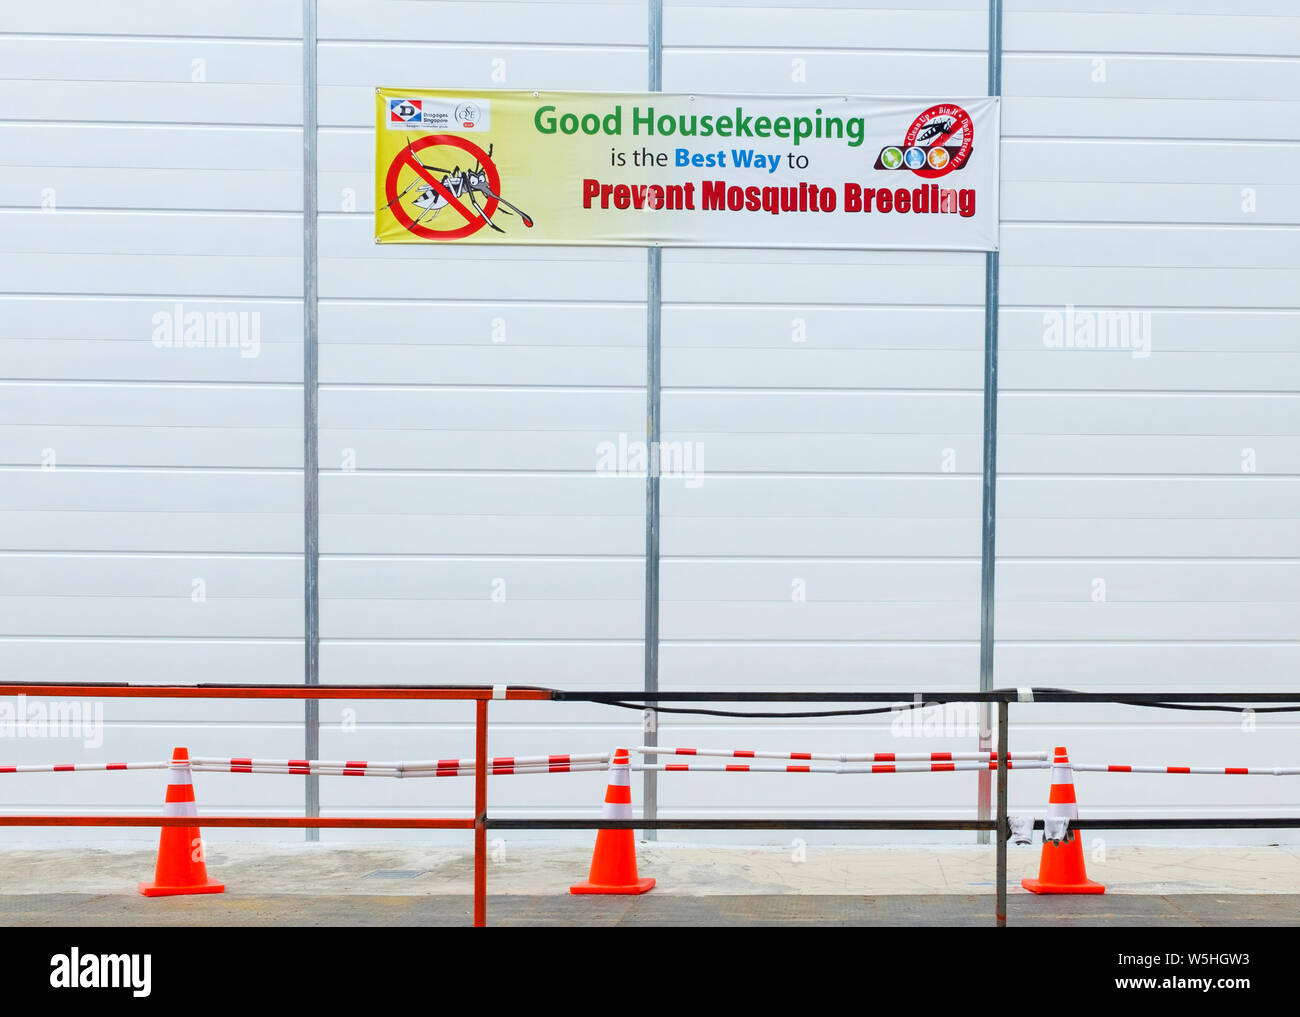 Zeichen der Förderung der öffentlichen Gesundheit, die besagt, dass eine gute allgemeine Ordnung und Sauberkeit verhindern hilft, Moskitos züchten, Singapur Stockfoto